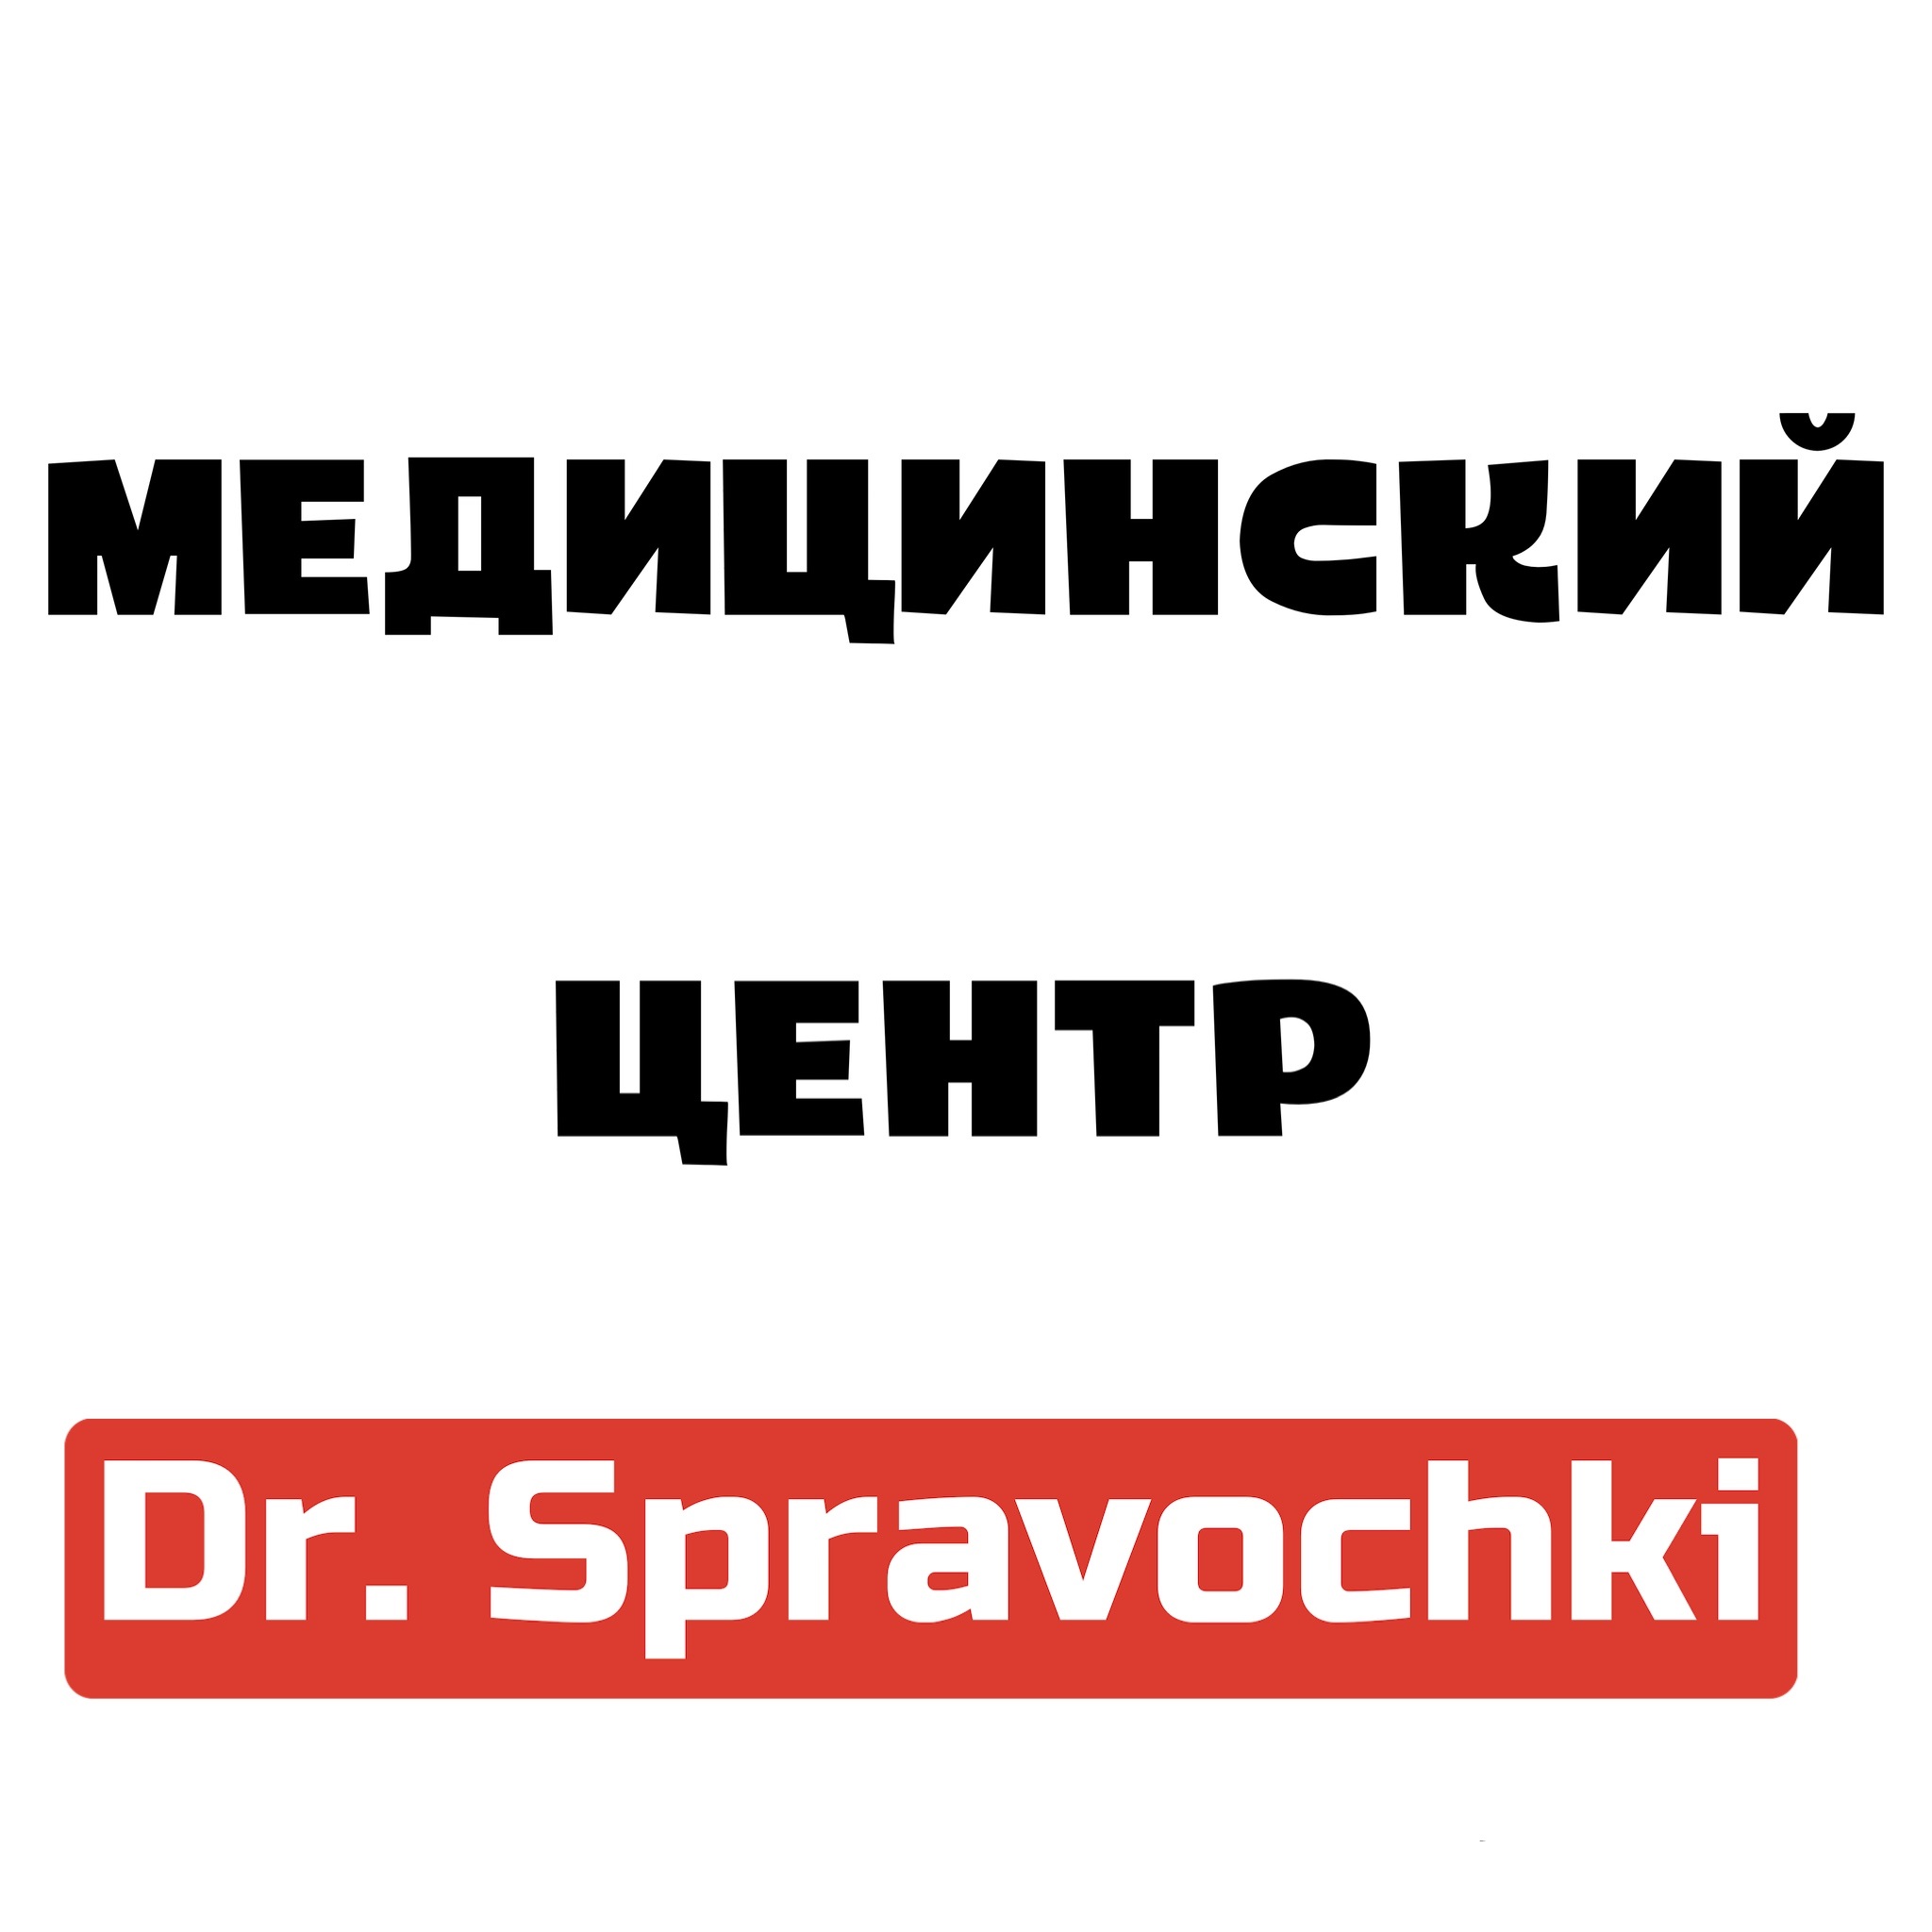 Медицинский центр Dr. Spravochki